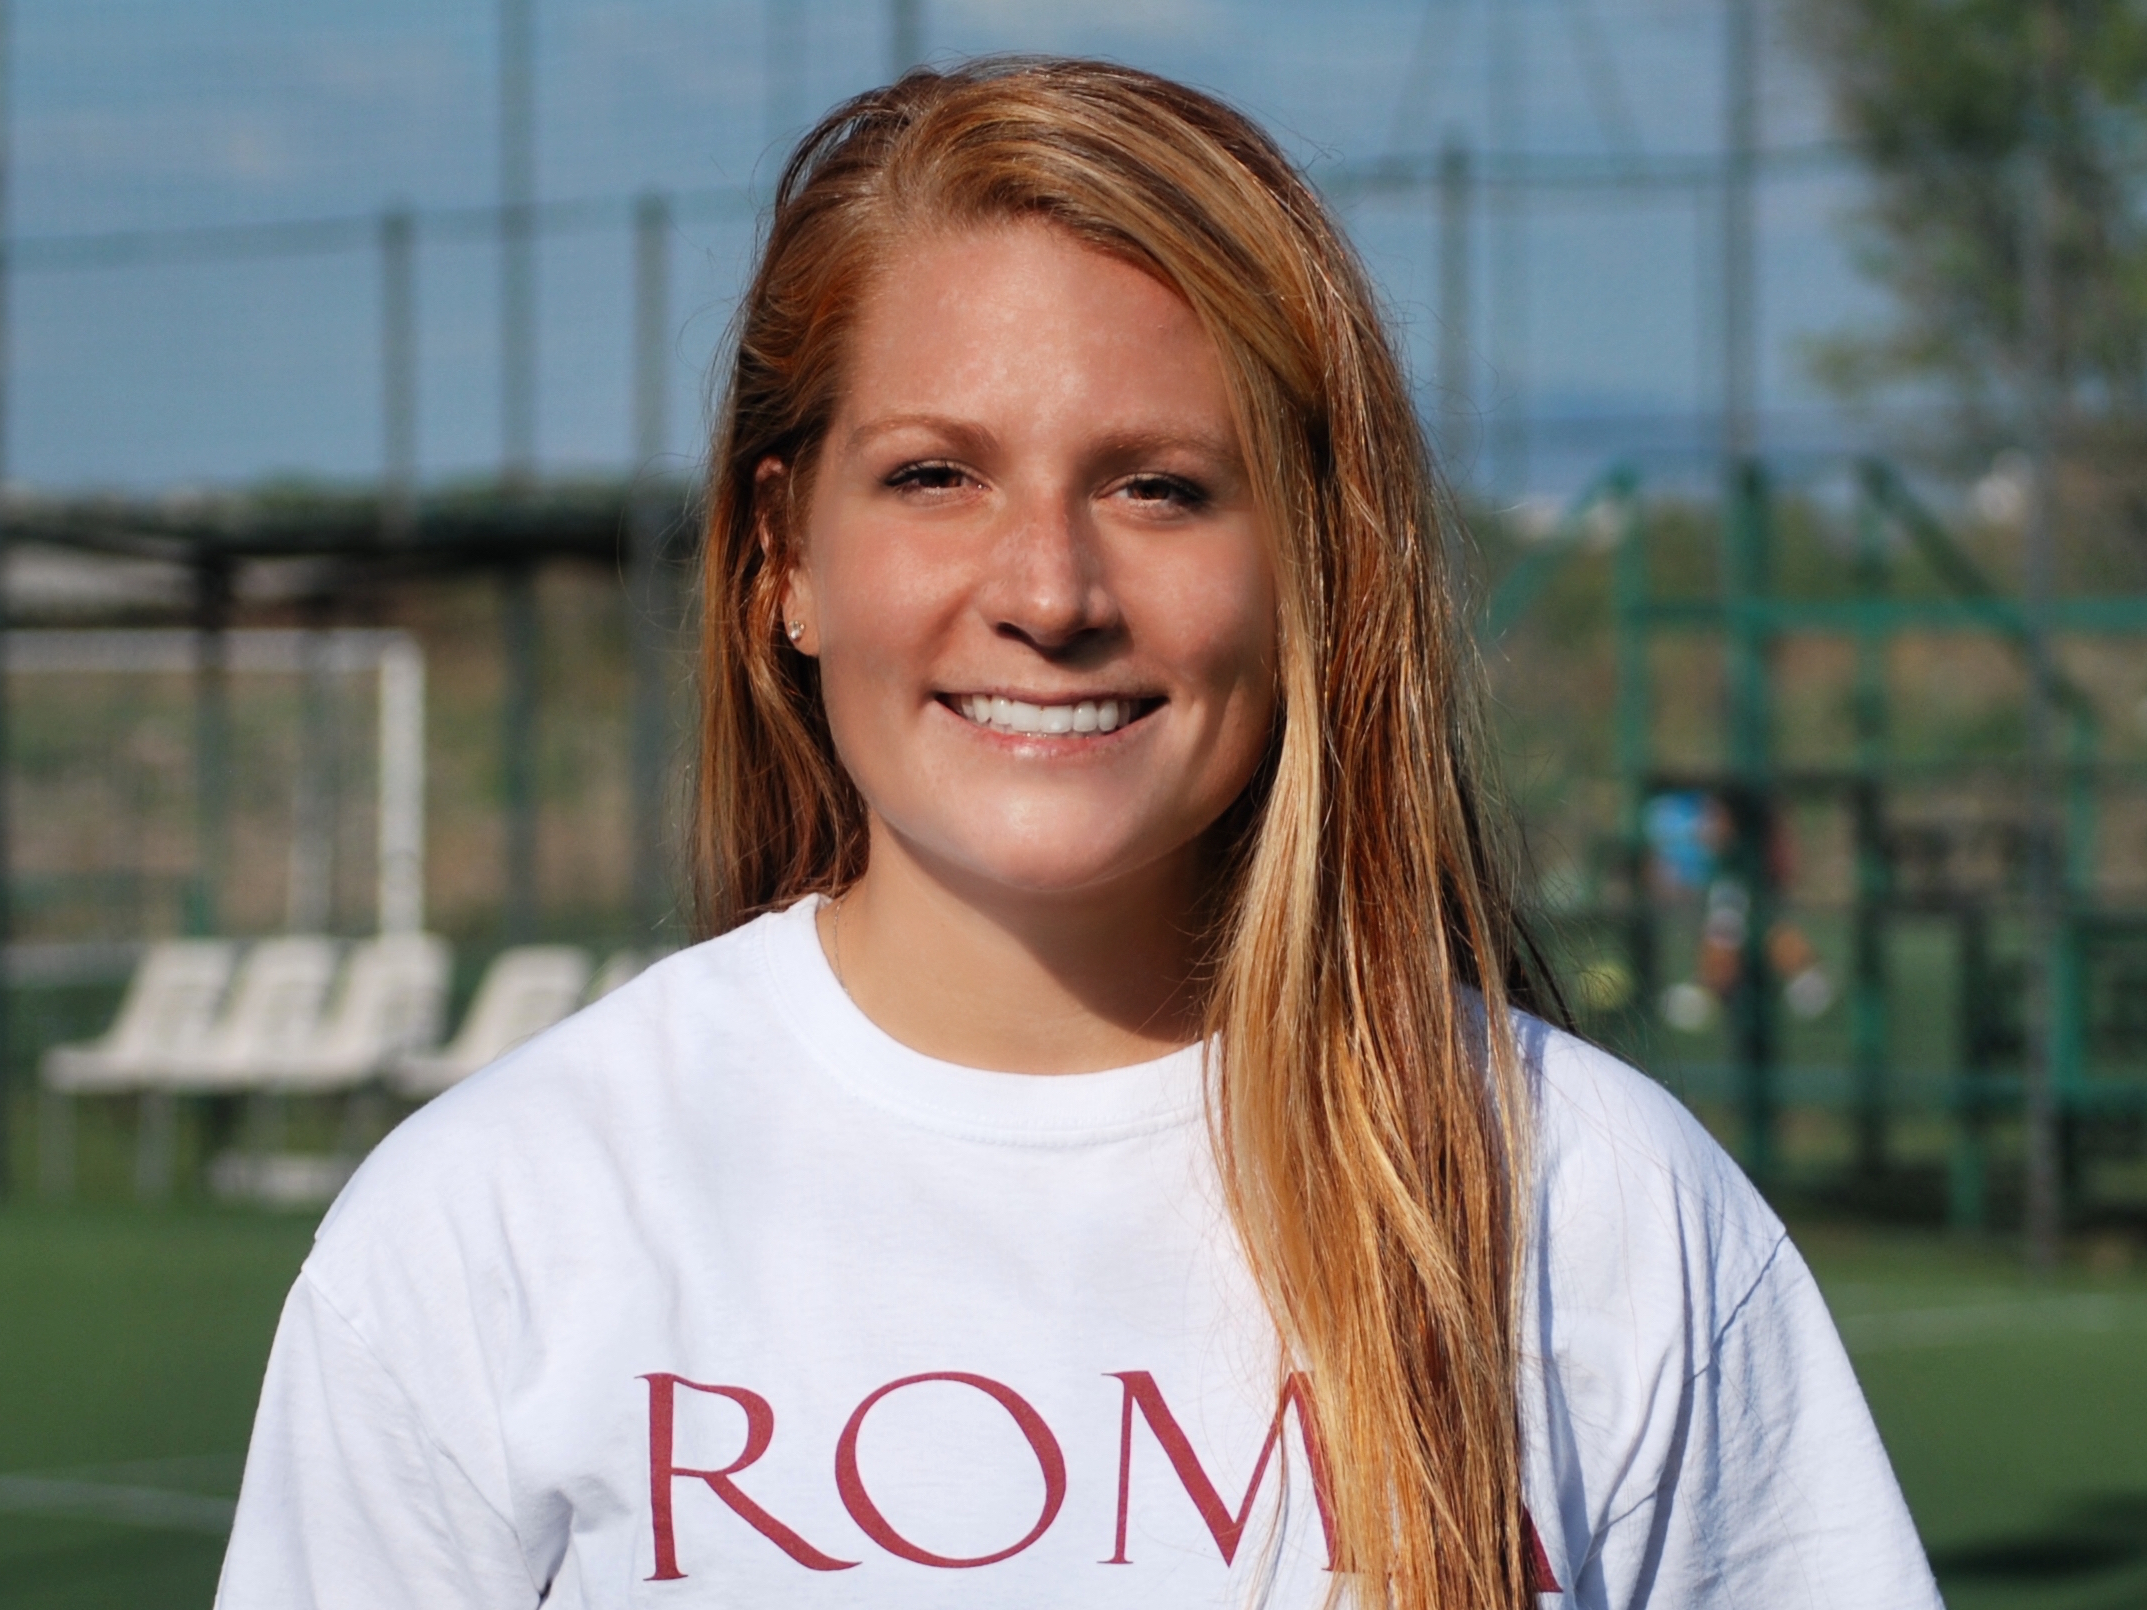 La Roma calcio femminile annuncia l’arrivo dell’attaccante americana Julia Weithofer